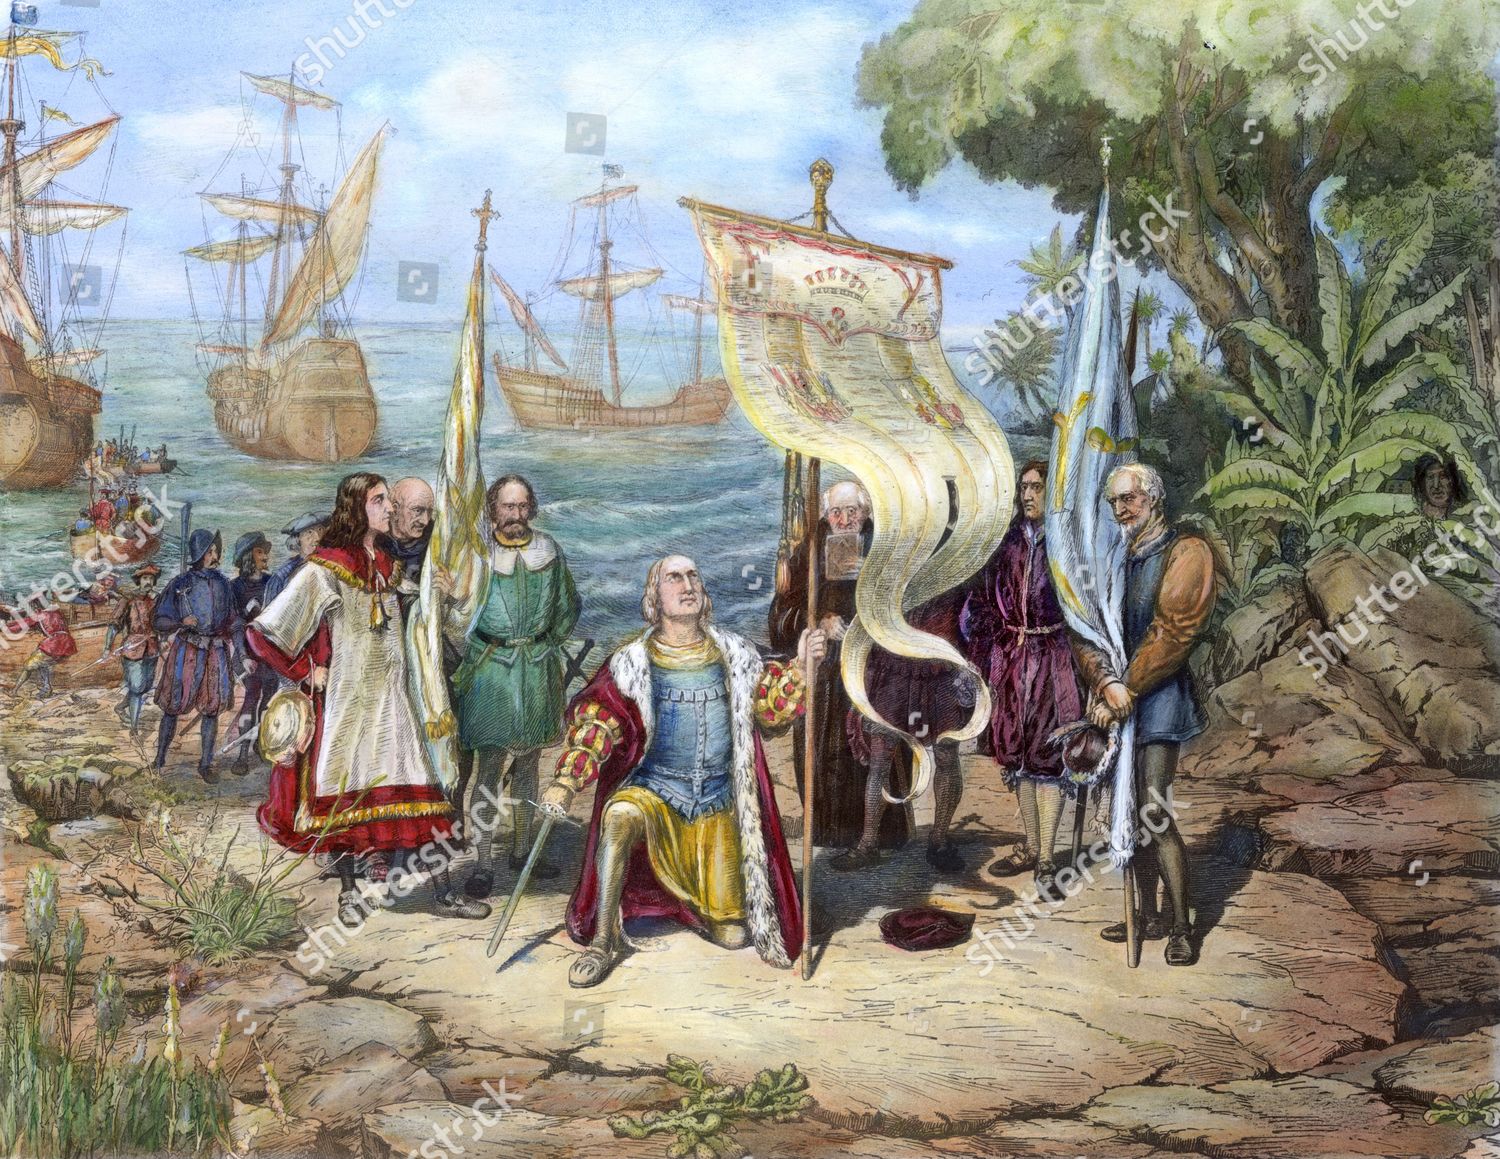 Открытие нового света христофором колумбом. Экспедиция Христофора Колумба достигла острова Сан-Сальвадор.